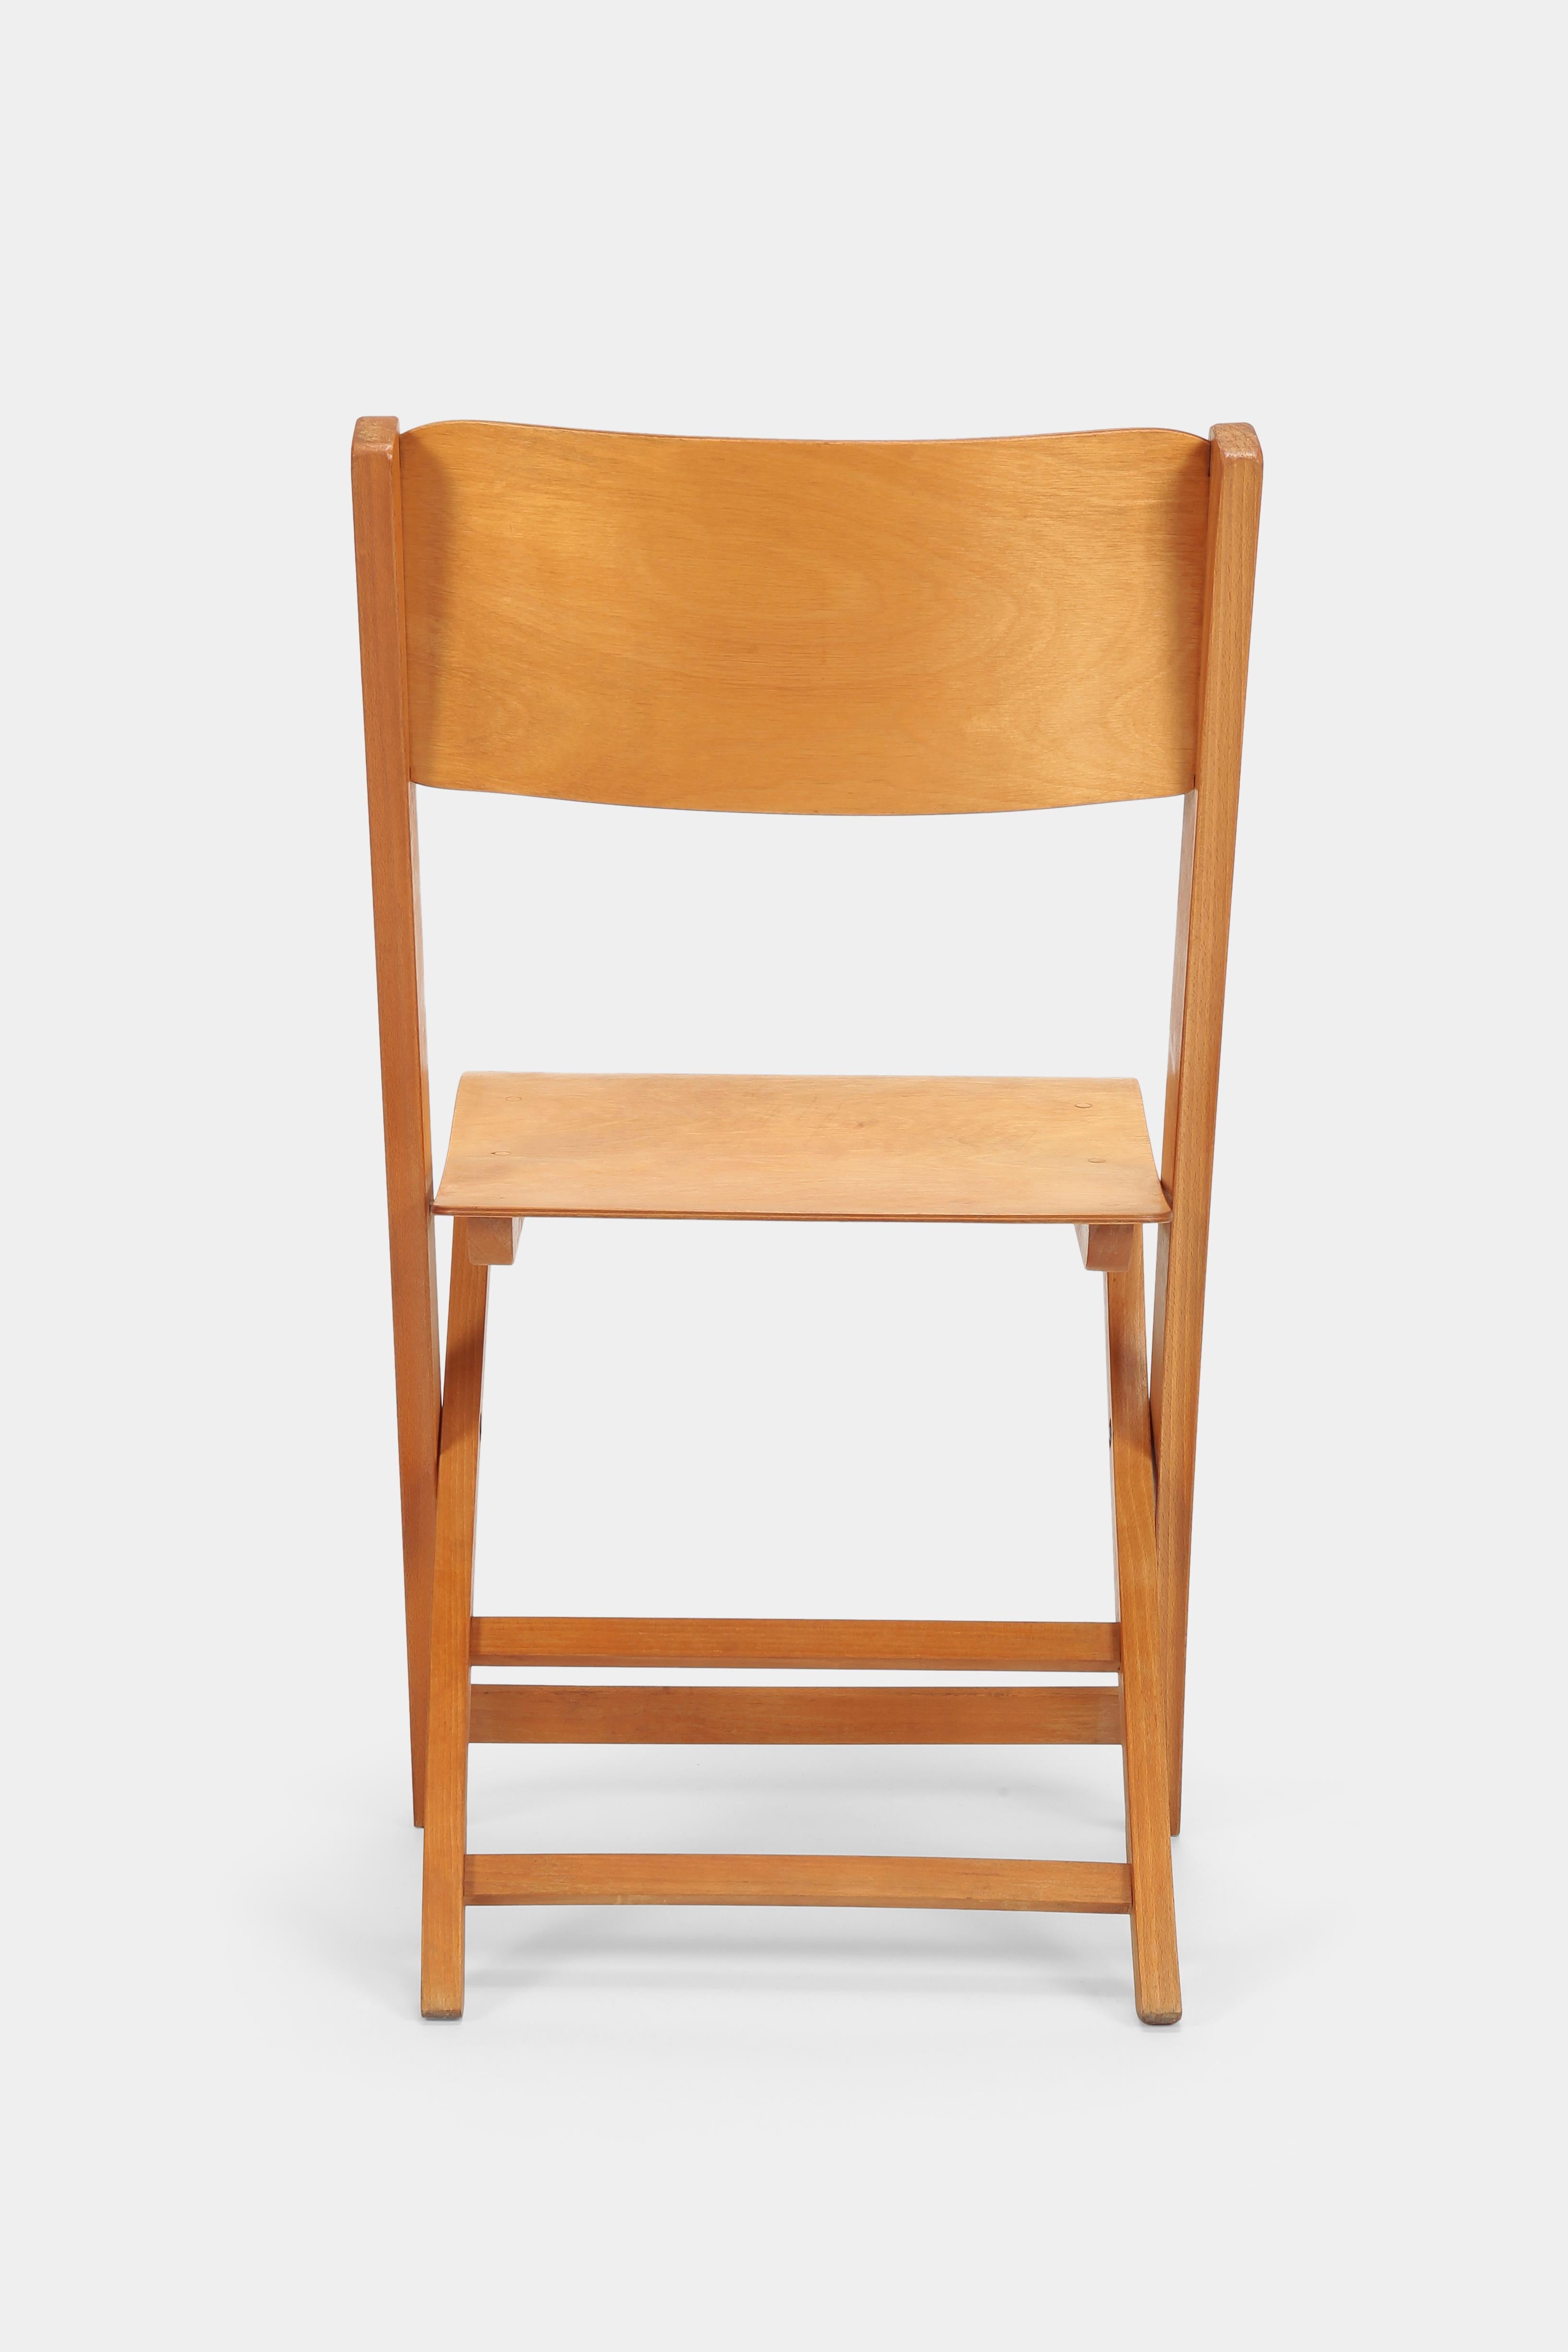 Beech Swiss Birchwood Folding Chair, 1940s